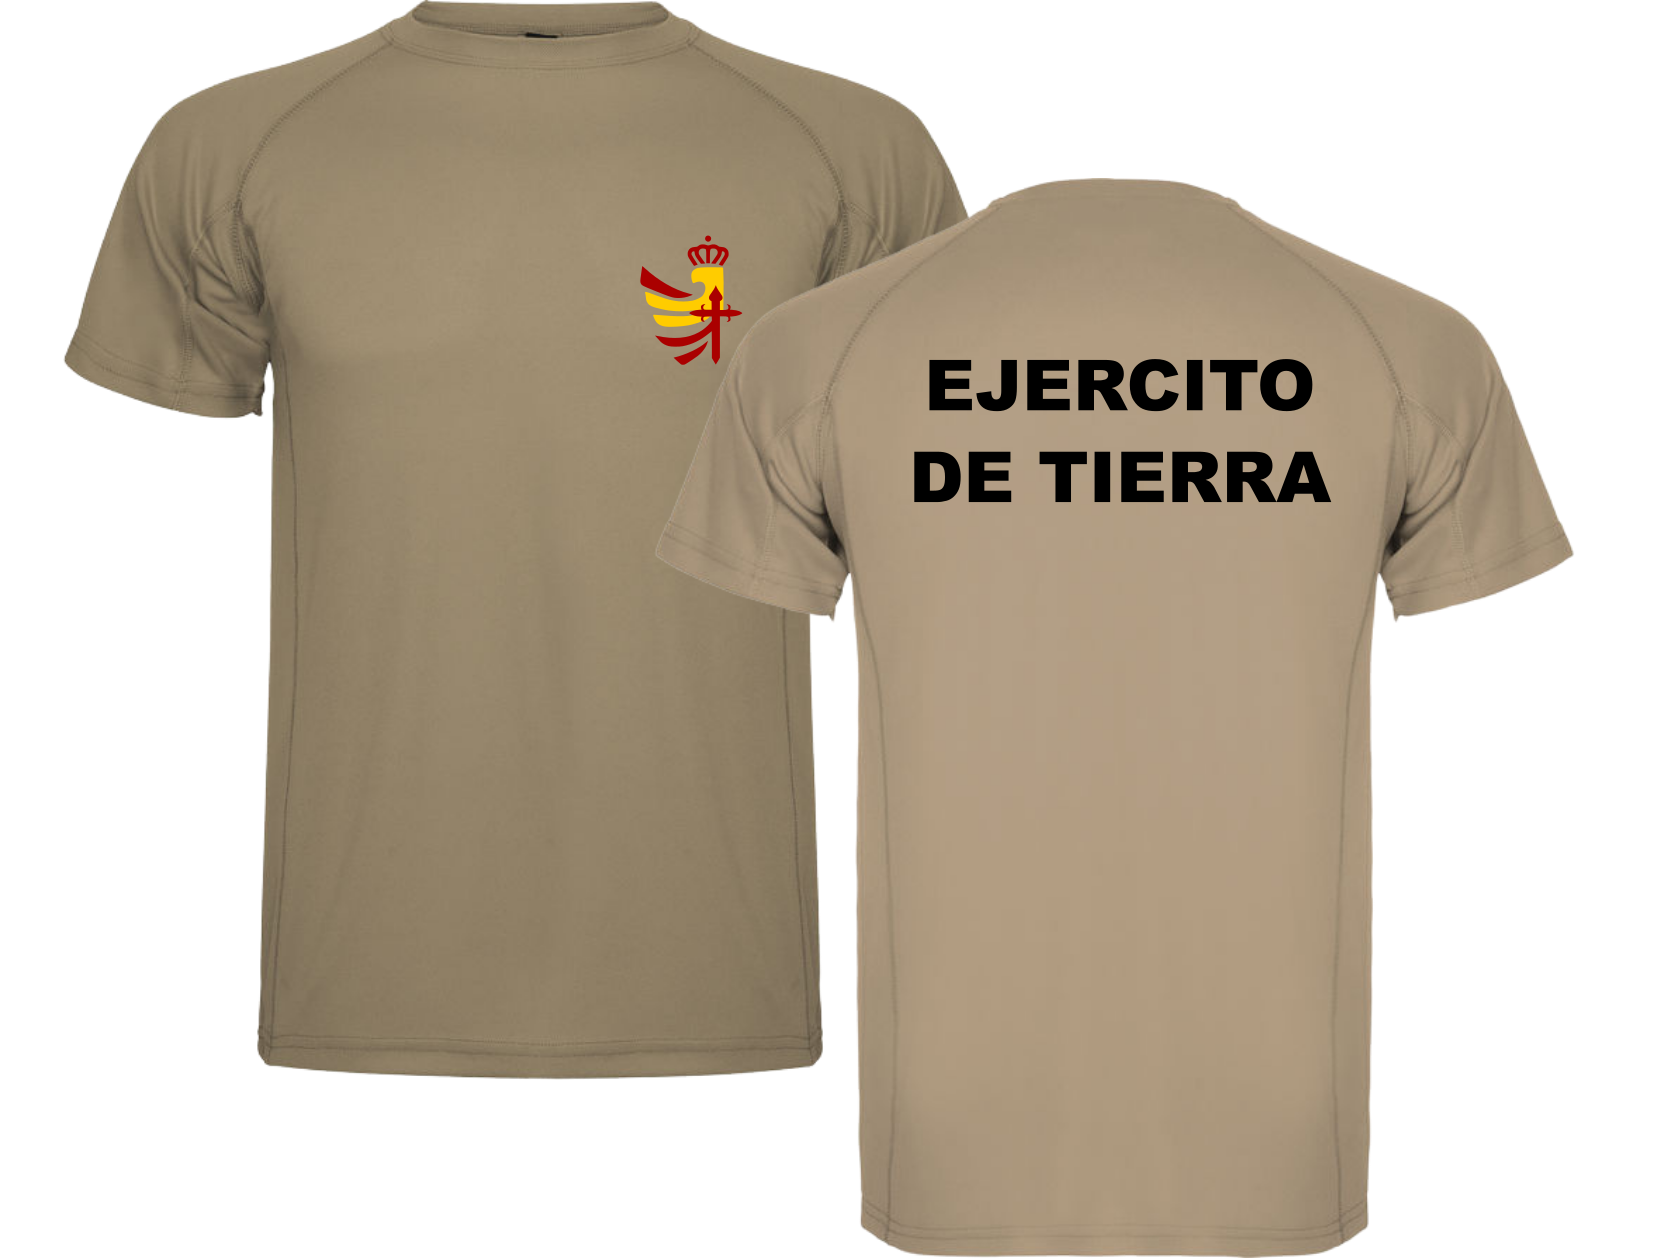 Camiseta técnica militar Ejercito de tierra – Tienda Militar